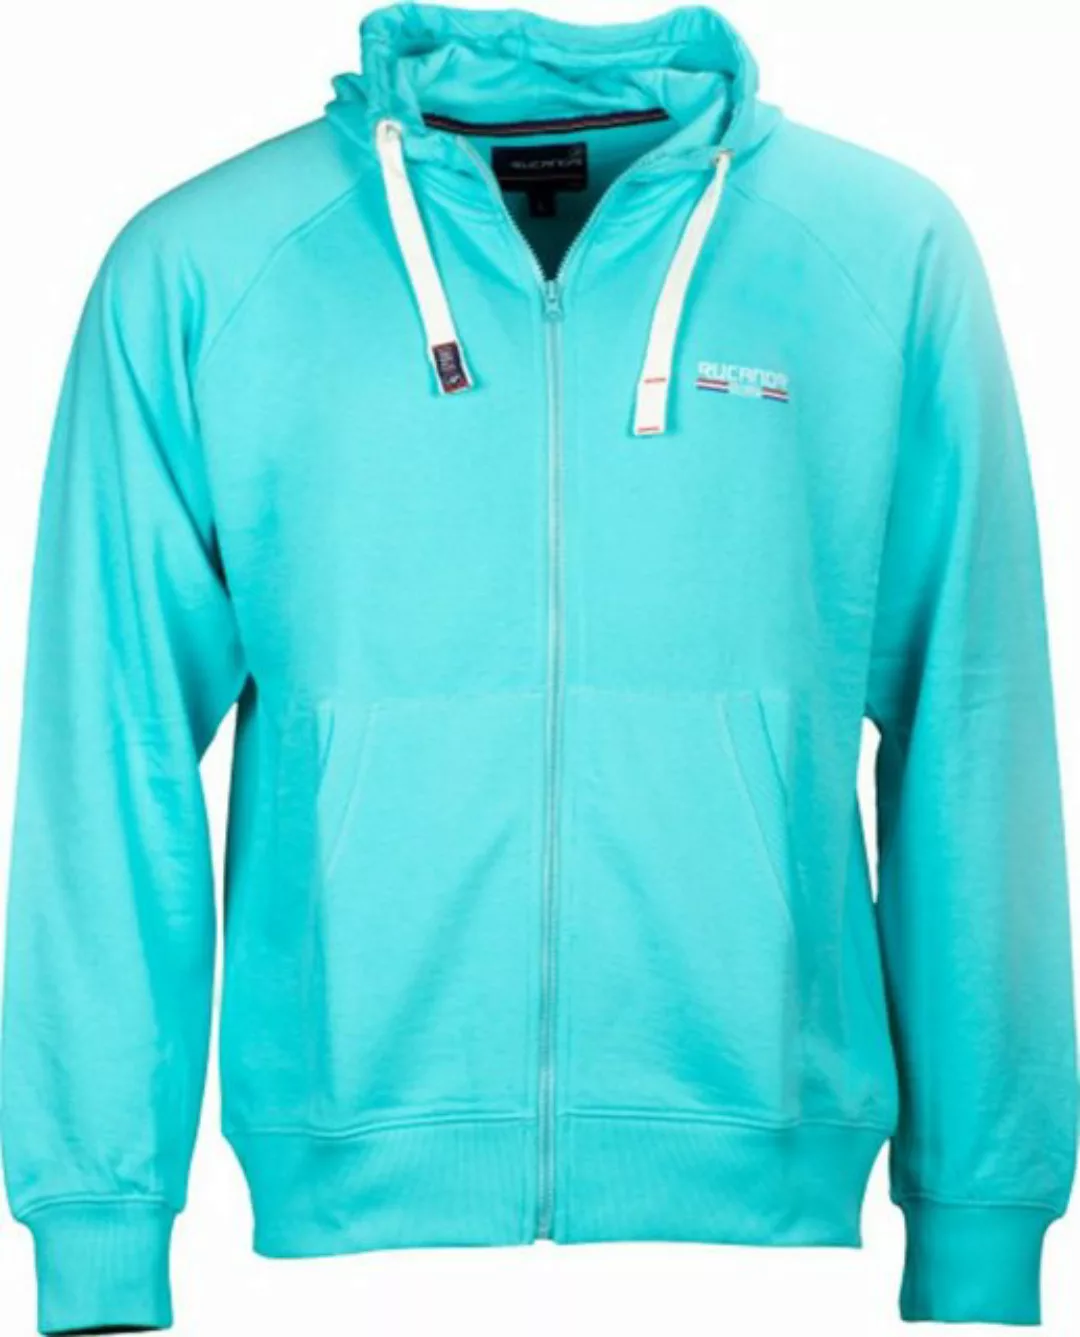 Rucanor Sweatjacke Sky sweatshirt mit Kapuze, ungebürstet, für Männer, aqua günstig online kaufen